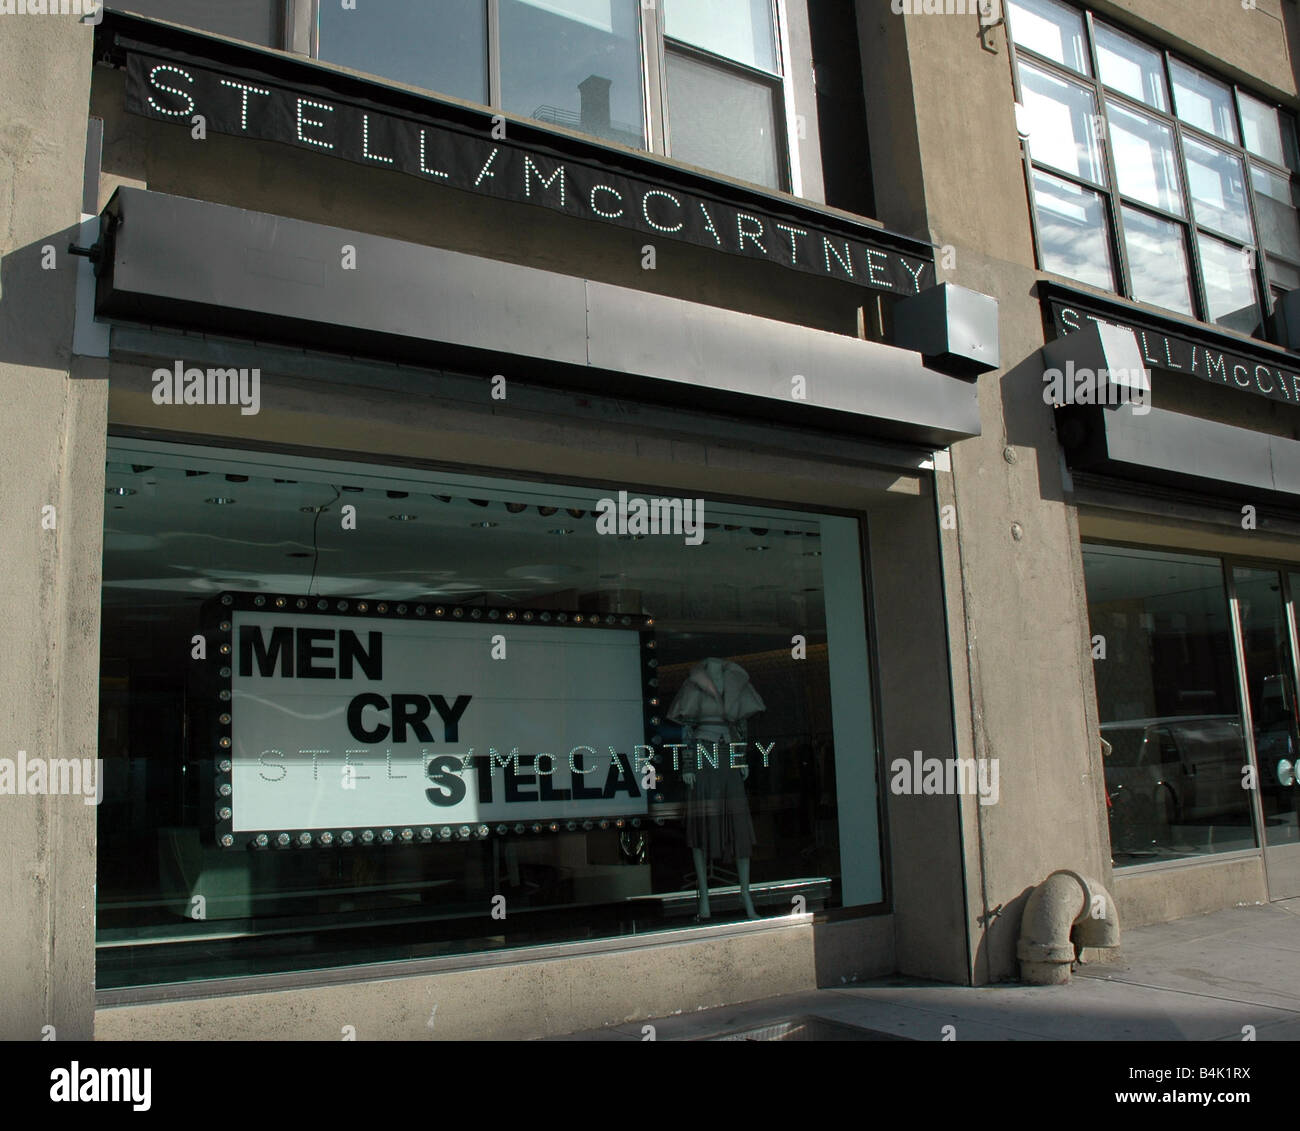 Général des scènes de New York Shop avant de Stella McCartney Stella pleurer hommes campagne publicitaire Shopping Boutiques magasins magasin Décembre 2004 Années 2000 Mirrorpix Banque D'Images